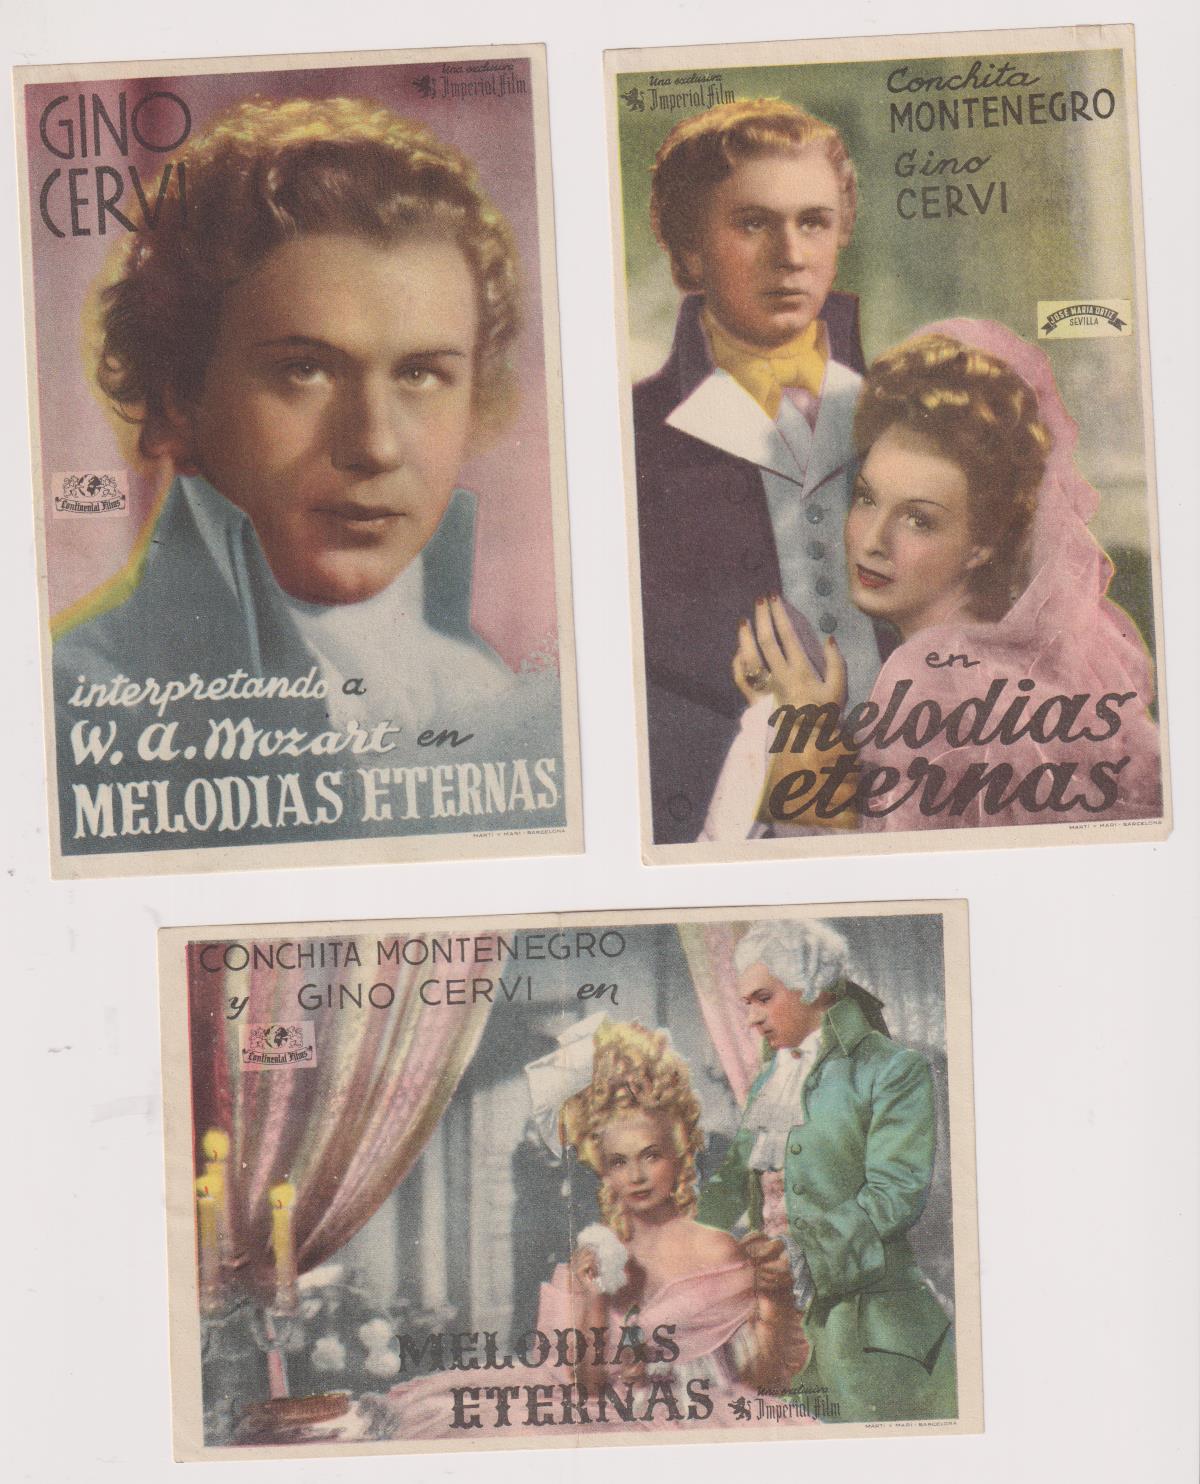 Melodías Eternas. Lote de 3 programas de Imperial Films. Teatro Calderón-Alcoy 1943 en el programa horizontal